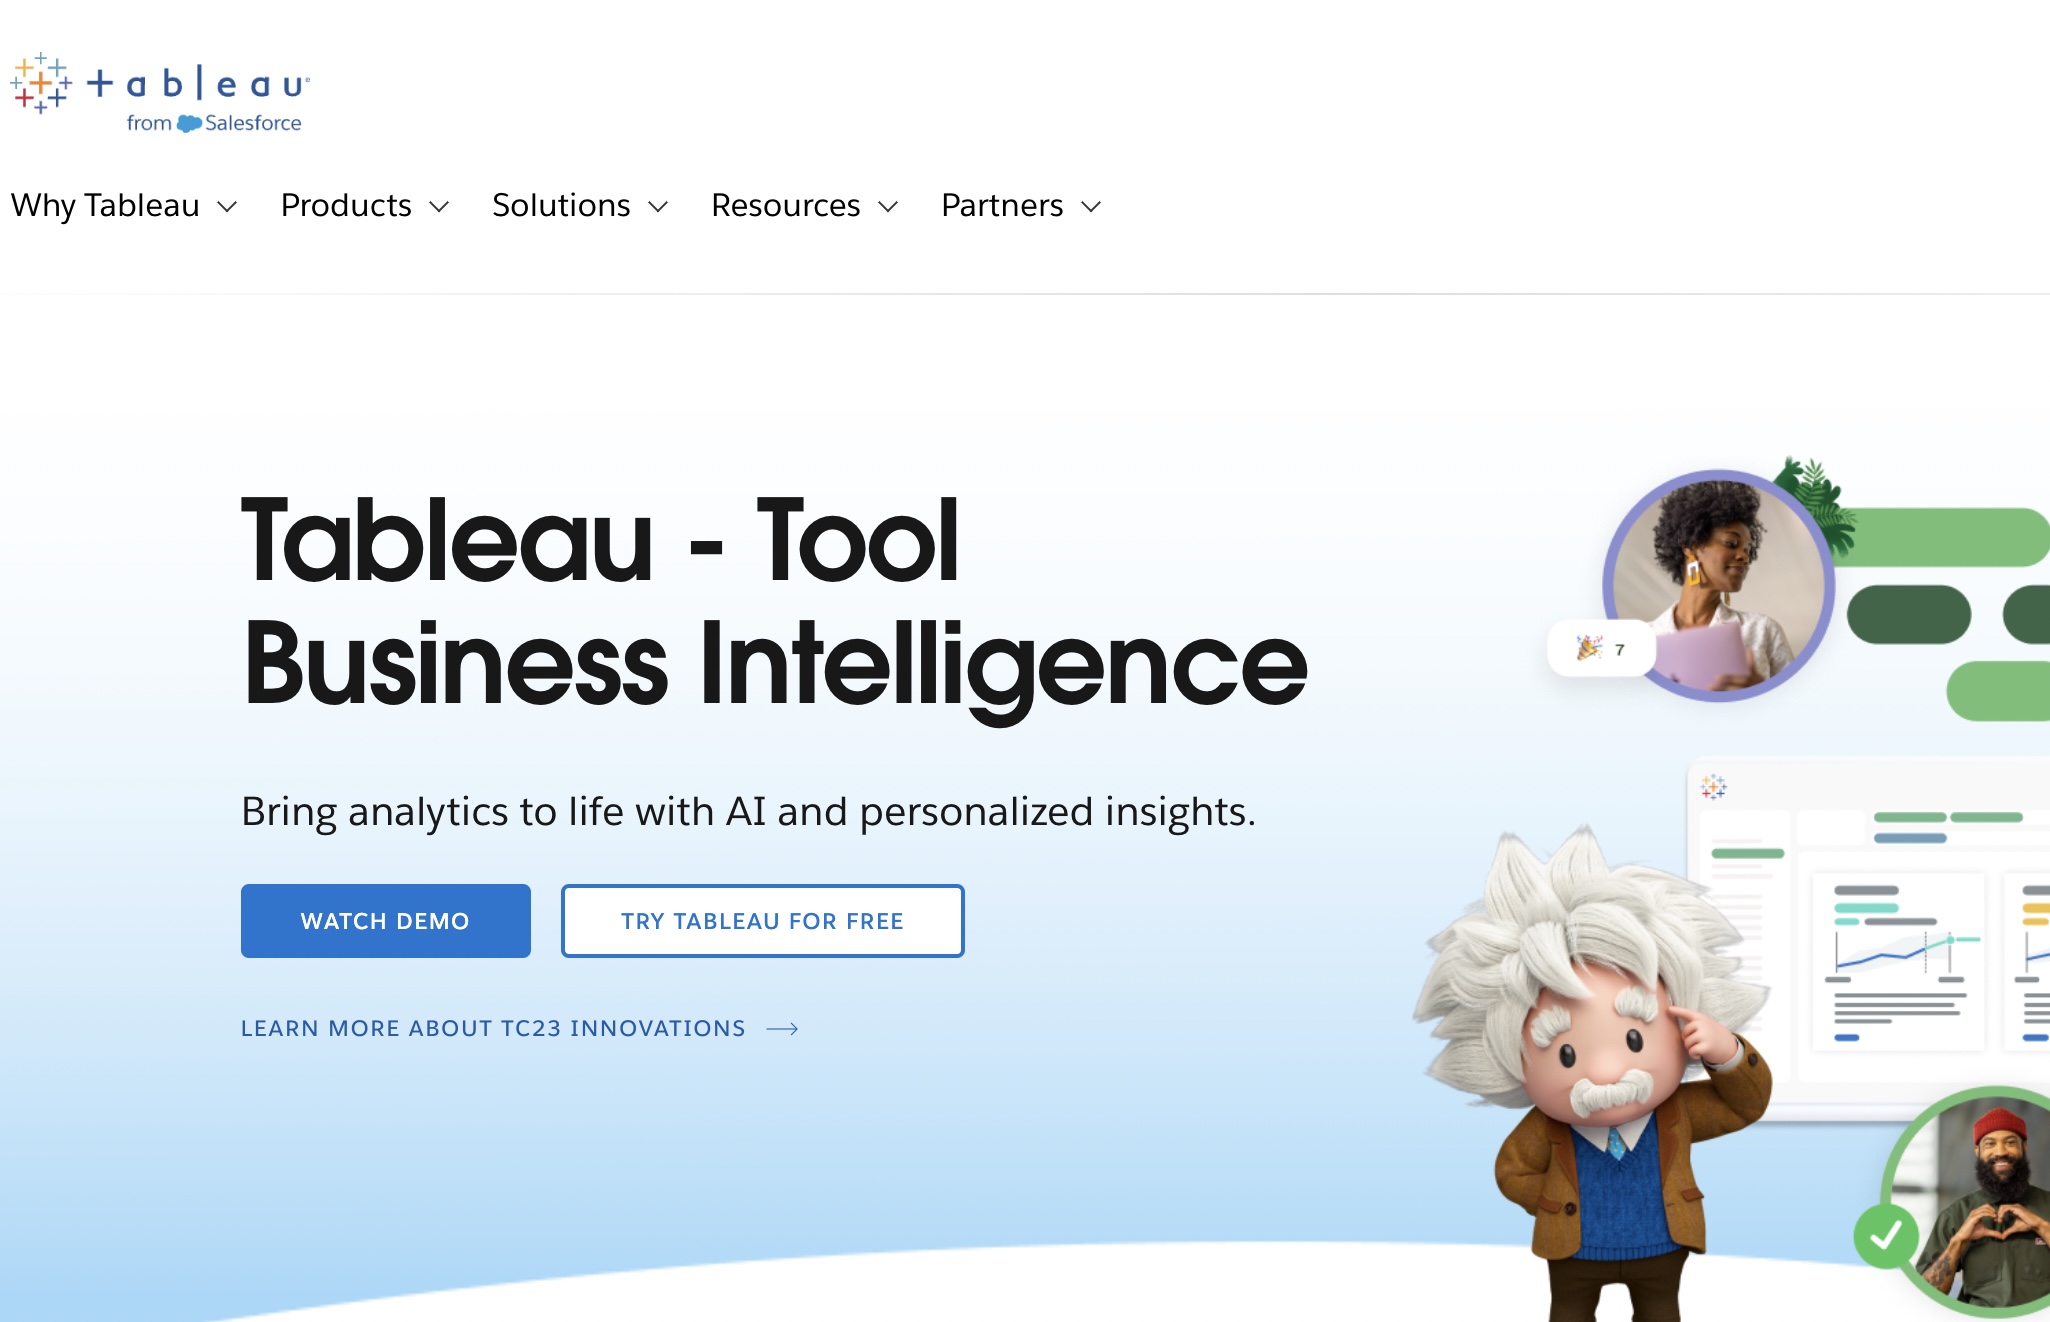 Tableau - Tool Business Intelligence